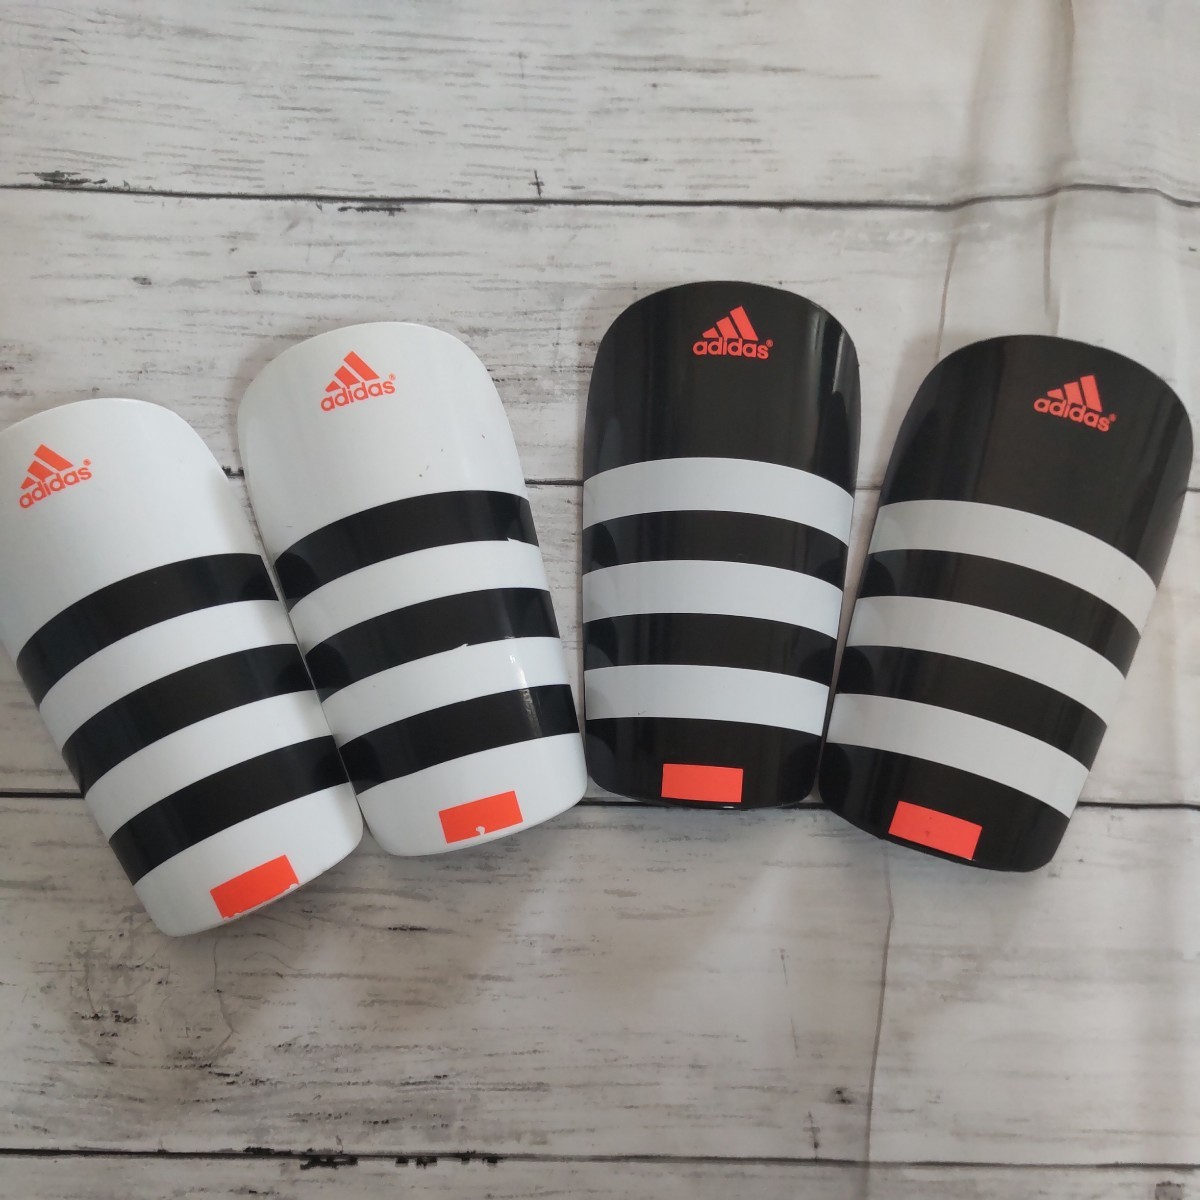 [2 шт. комплект ] Adidas # голень ..# щиток щитки футбол adidas ученик начальной школы Kids ребенок Junior 100110120130140150